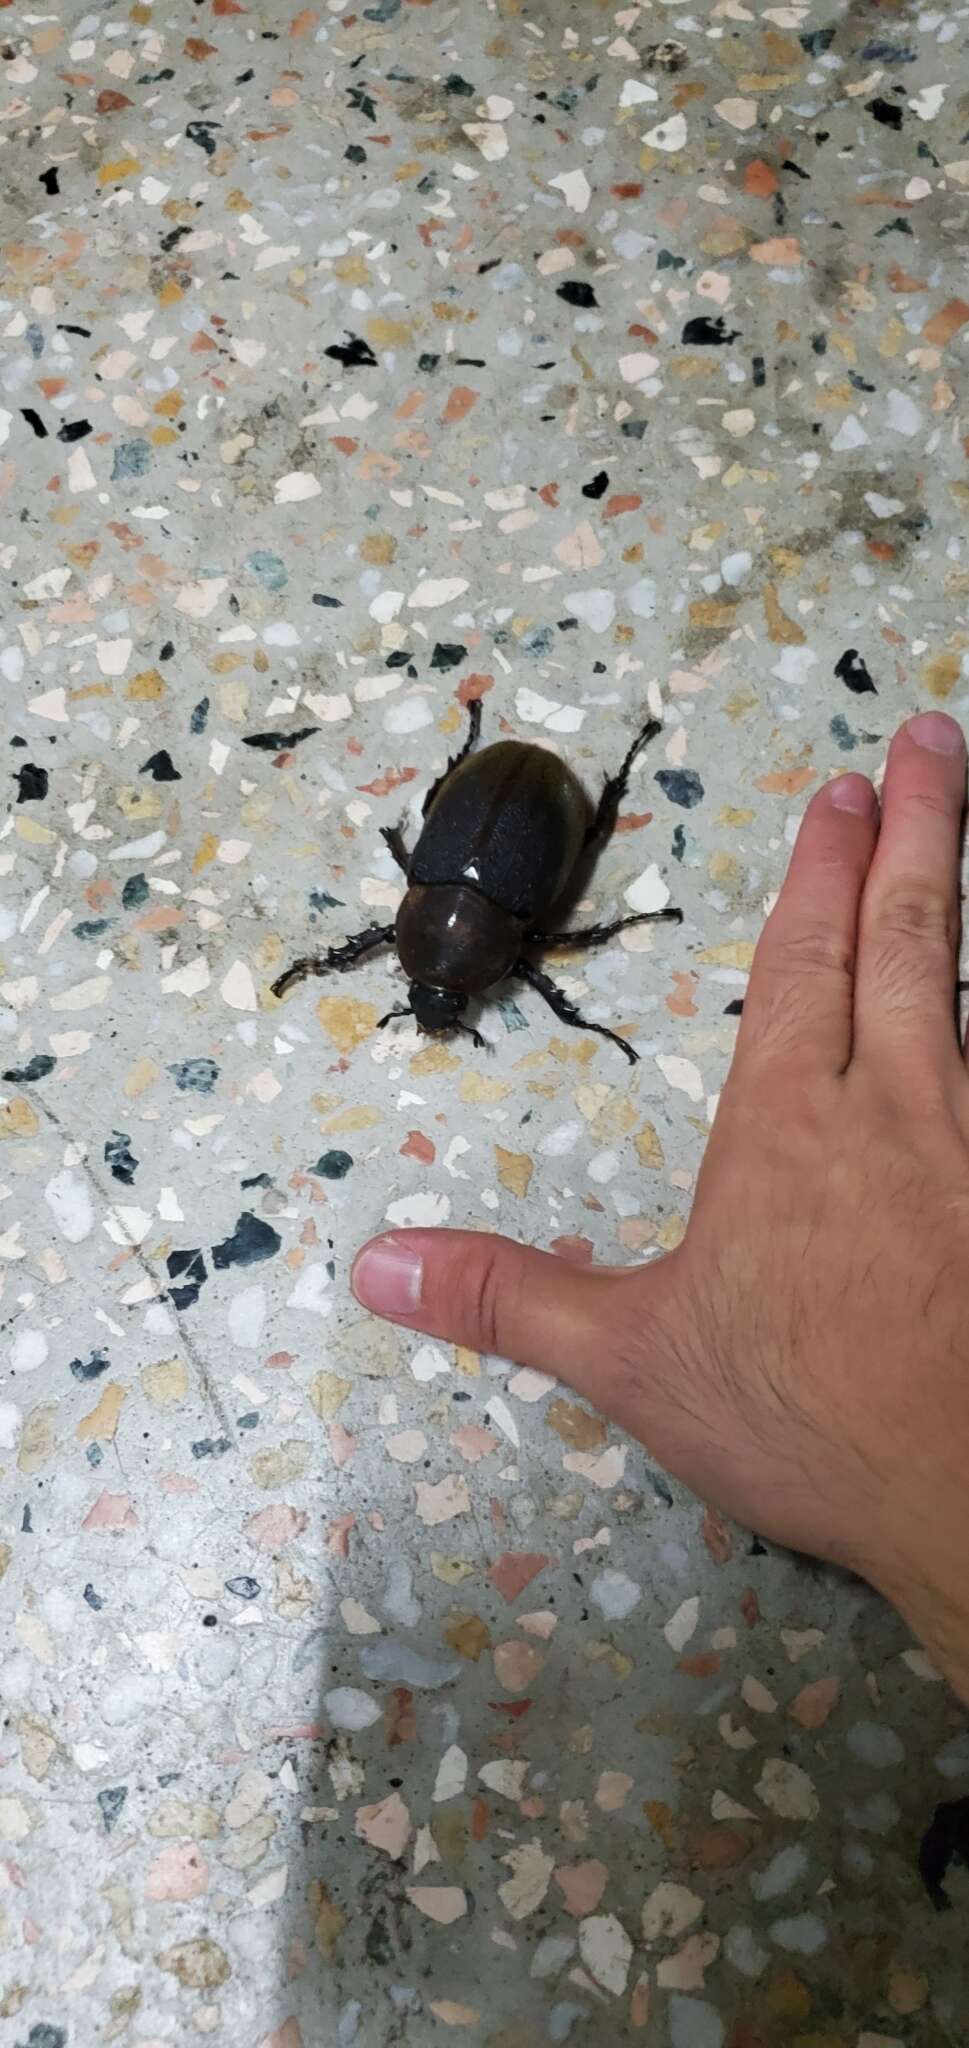 Image of Hercules Beetle